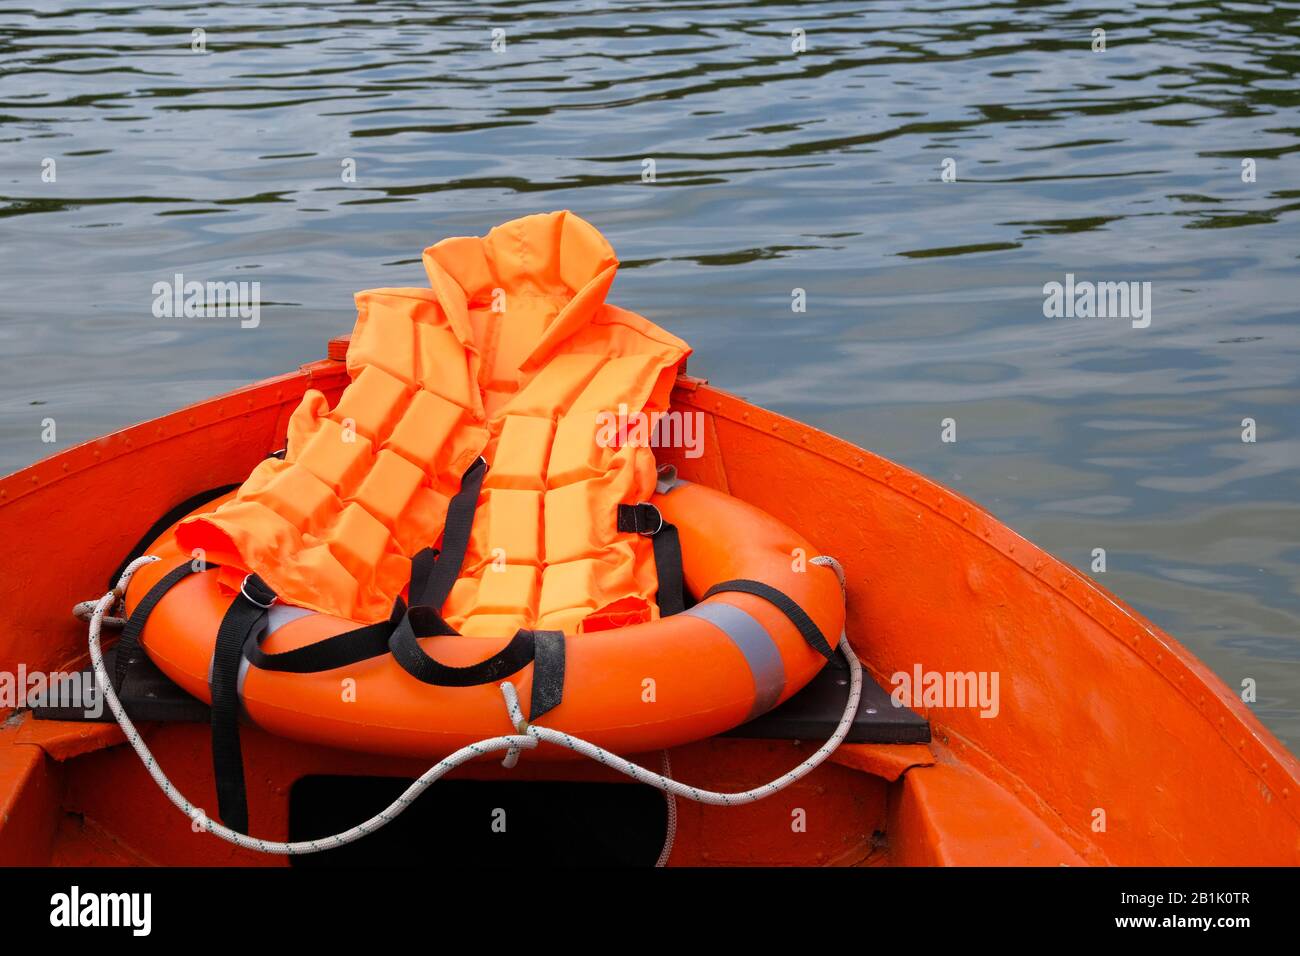 Outfit des Rettungsschwimmers auf dem Wasser im Sommerboot, Rettungsweste, Rettungsschwimmerjacke in orangefarbenem Farbton. Konzeptrettung auf dem Wasser im Sommer. Stockfoto